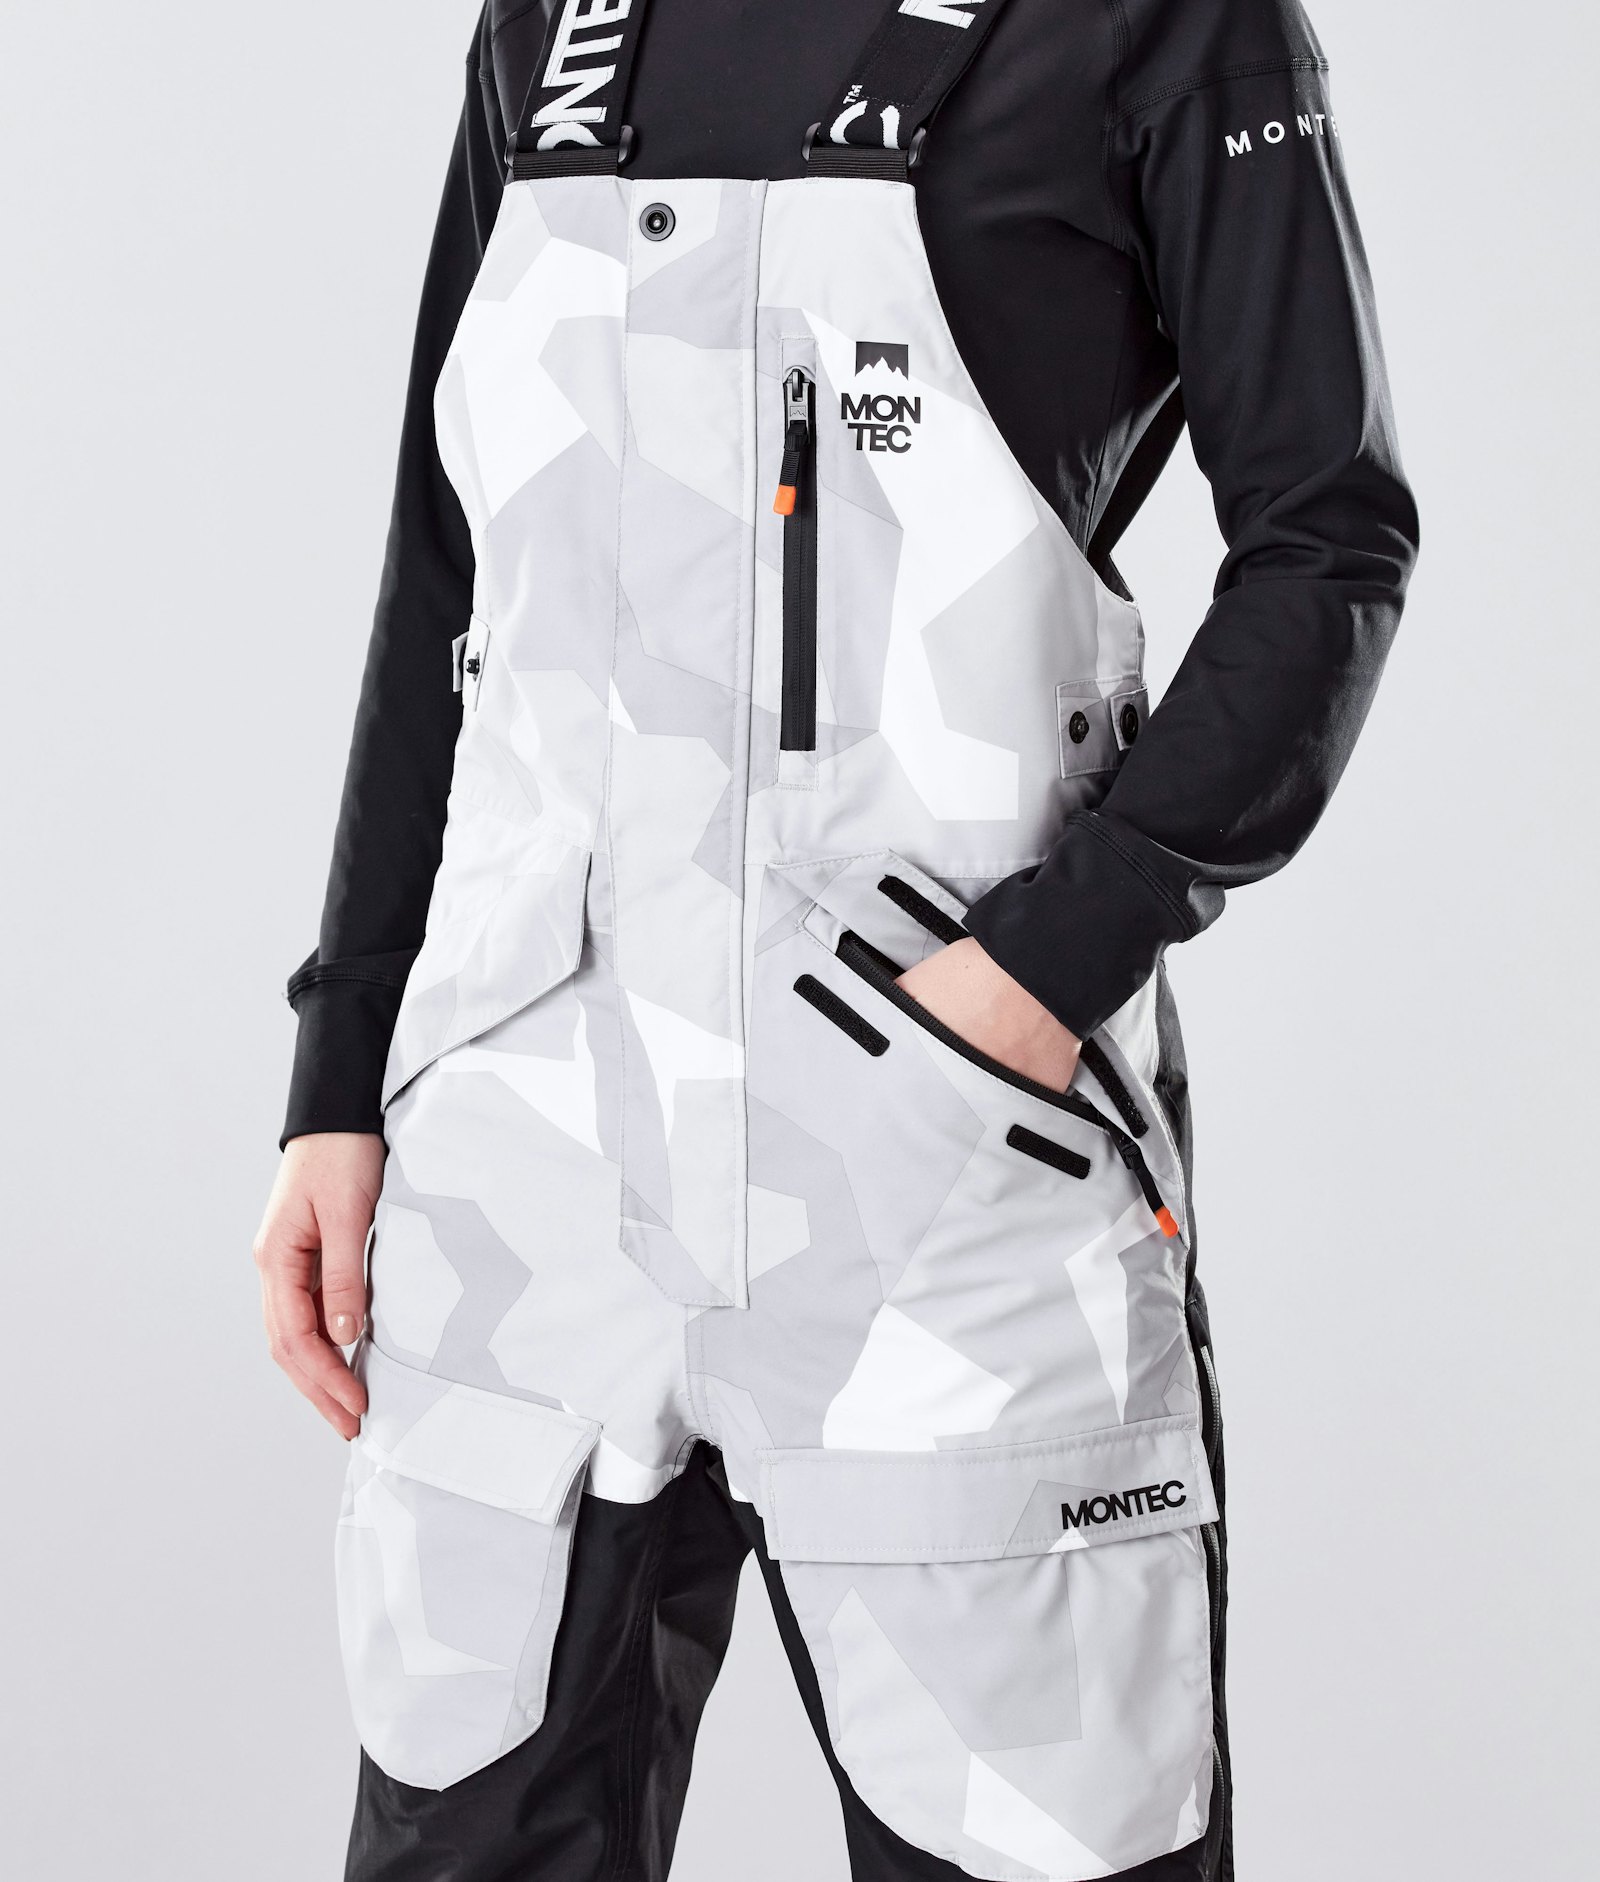 Fawk W 2020 Pantalon de Snowboard Femme Snow Camo/Black